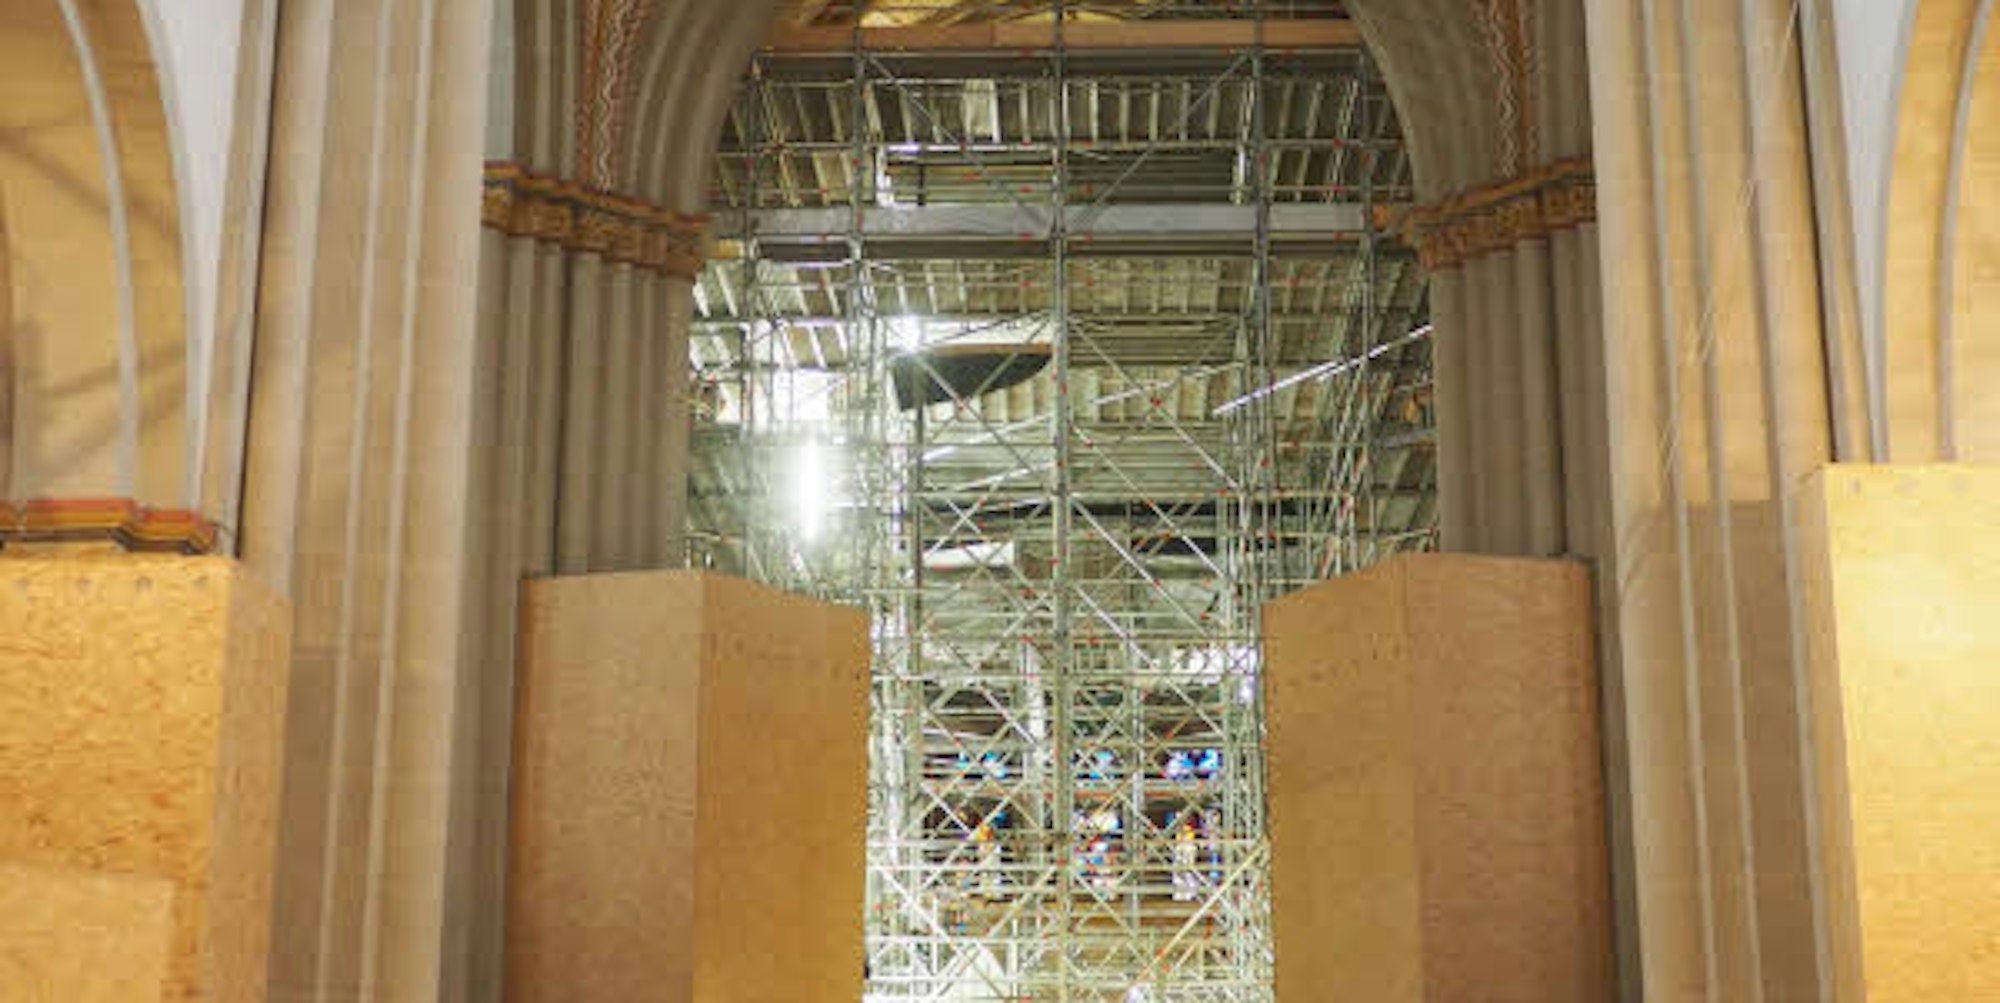 Holzverschalungen und Gerüste prägen zurzeit das Bild in der Münsterbasilika.